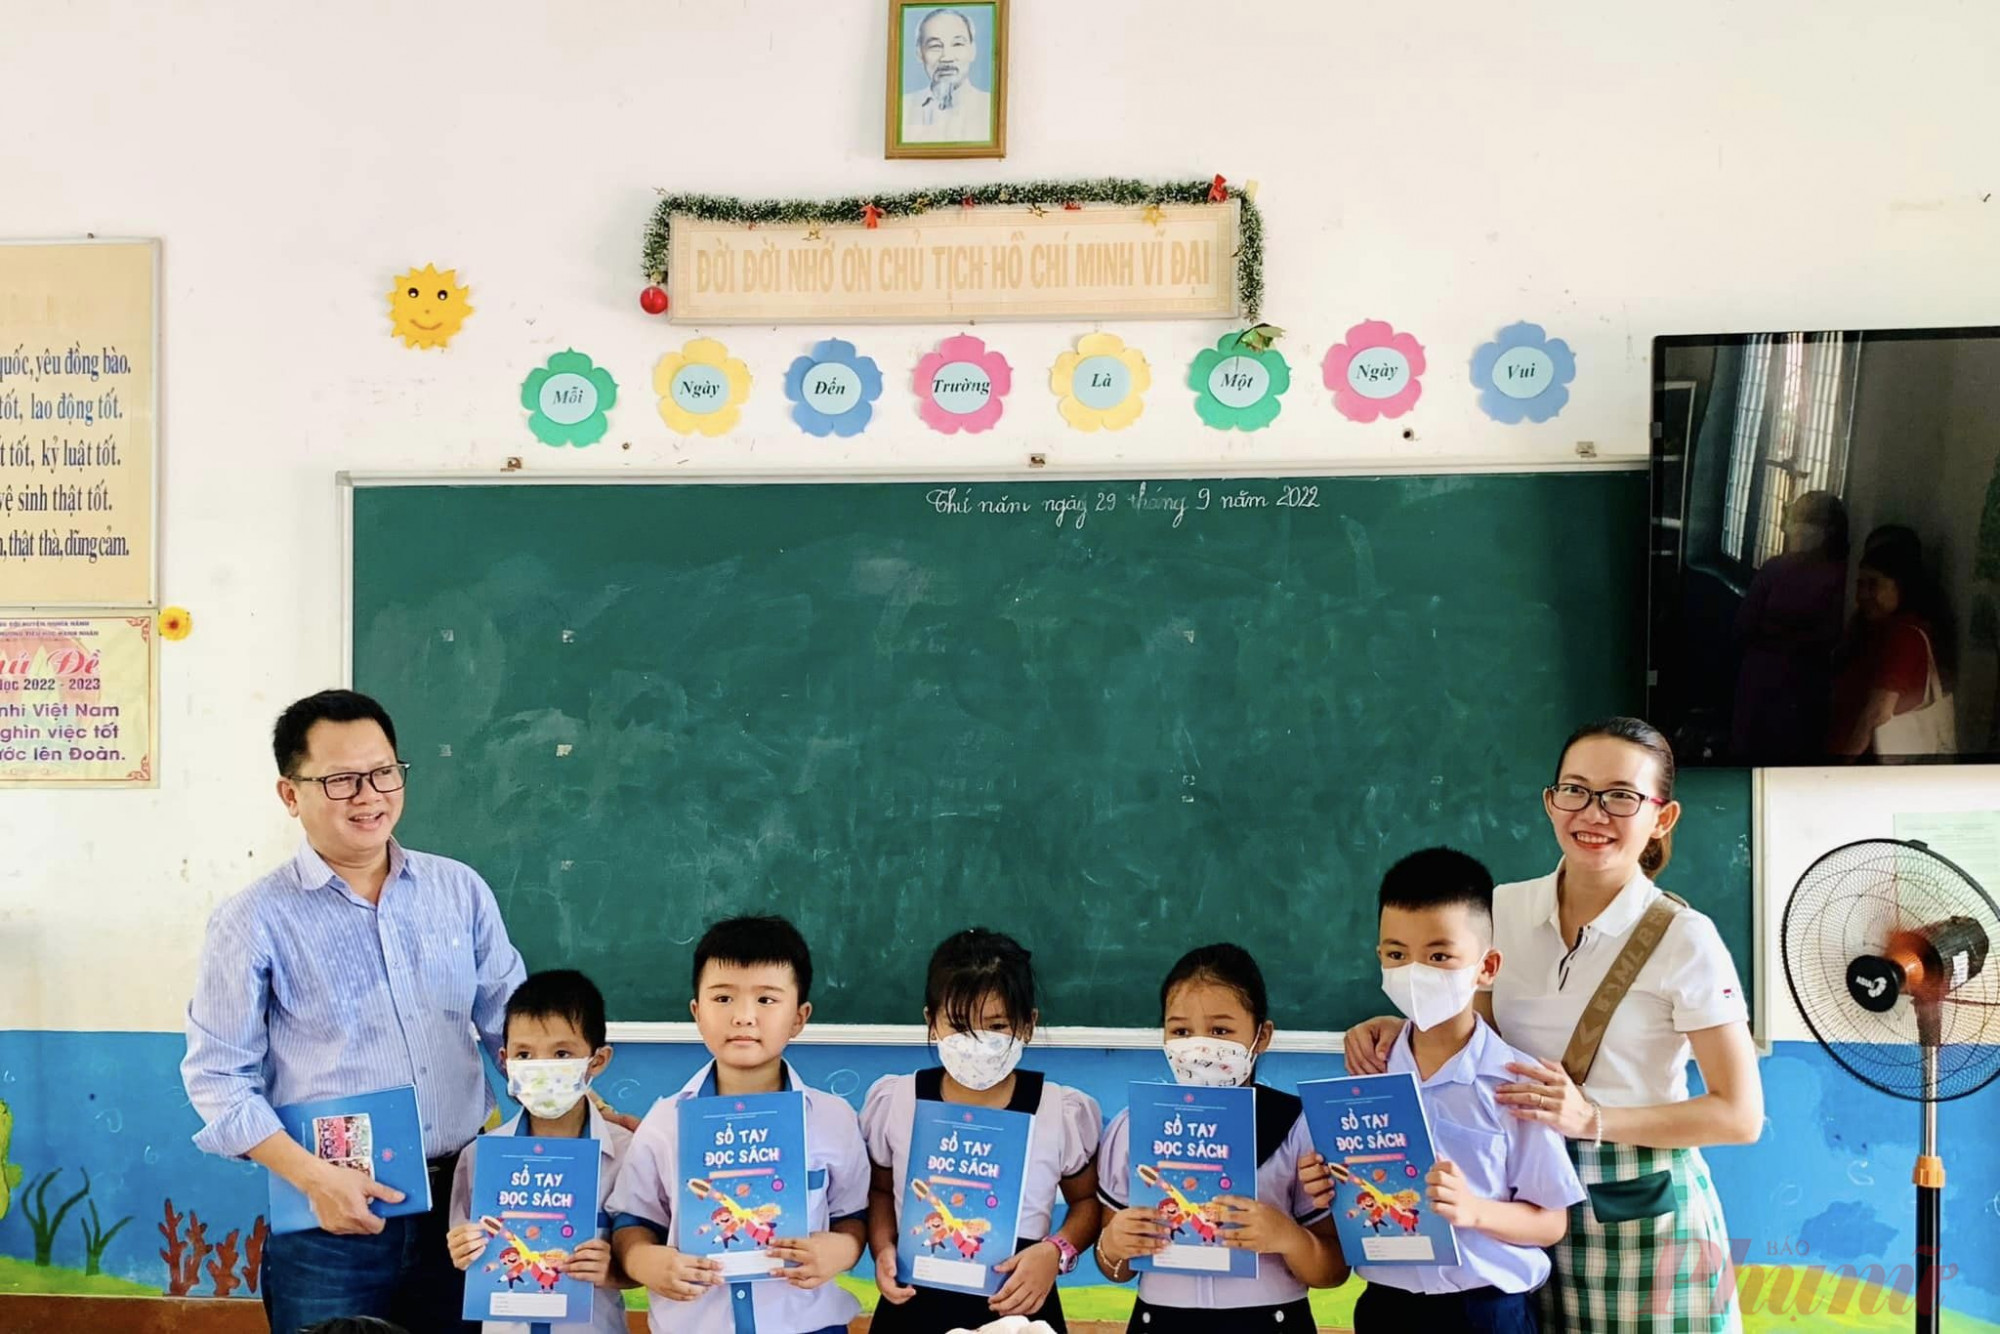 Ông Hoàng Trọng Thủy hướng dẫn học sinh một trường tiểu học ở tỉnh Quảng Ngãi cách đọc sách hiệu quả - Ảnh: NVCC